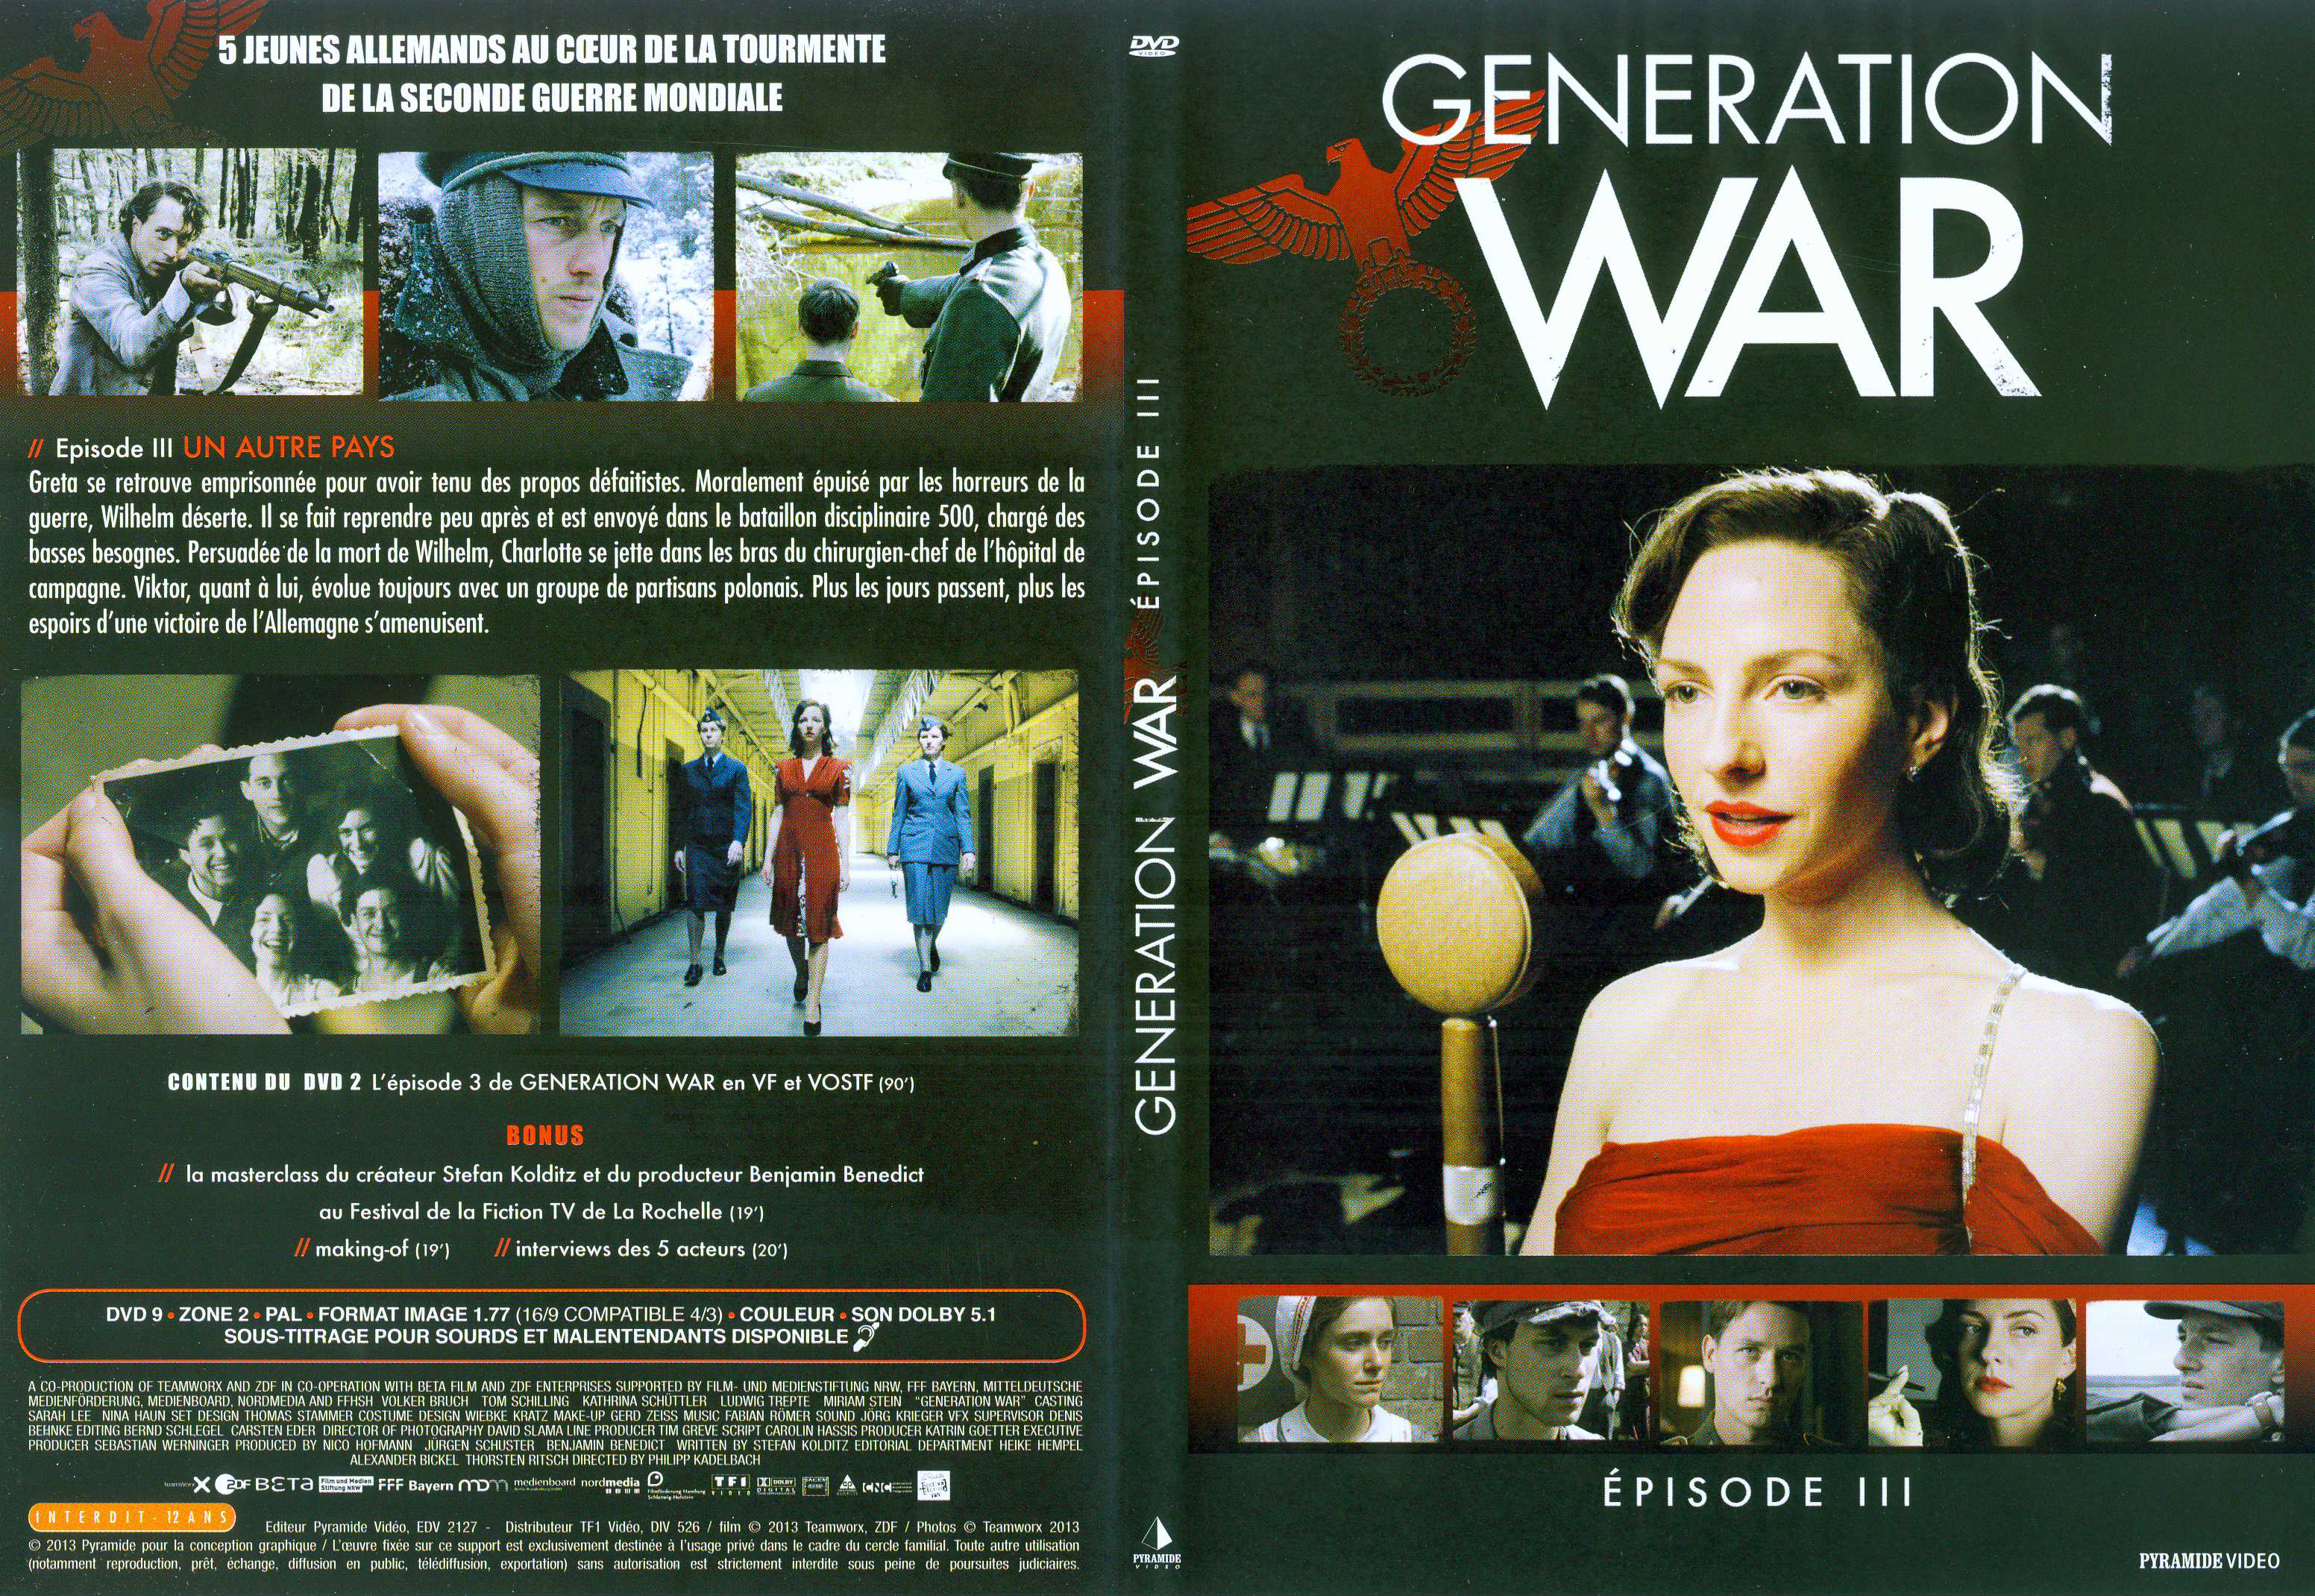 Jaquette DVD Generation War DVD 2